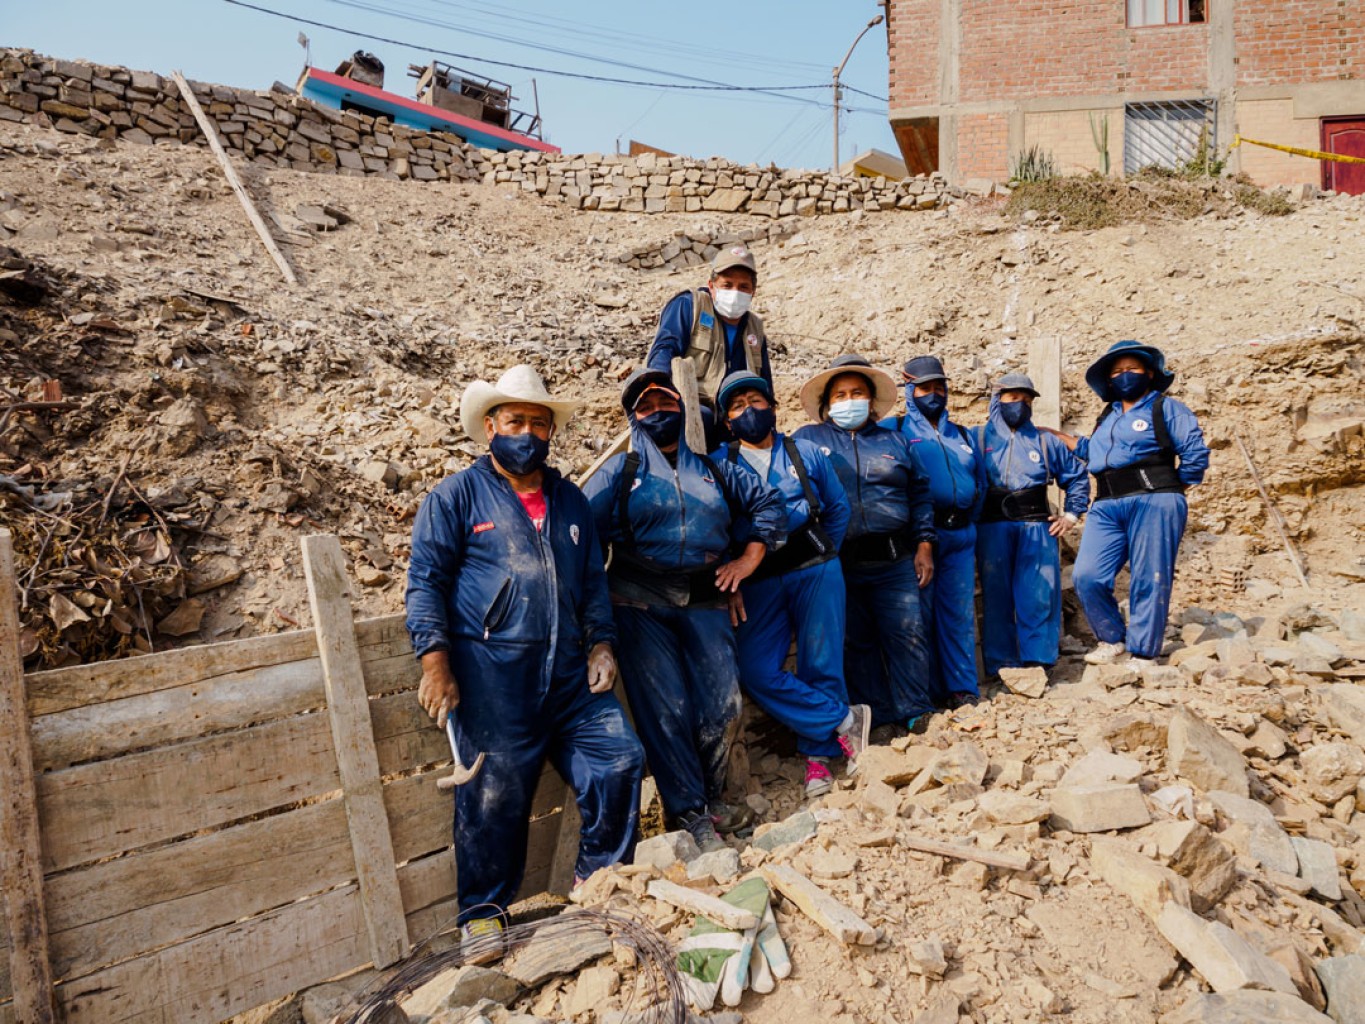 Mujeres constructoras juntas después de una jornada de trabajo en el parque inclusivo de Los Jazmines.